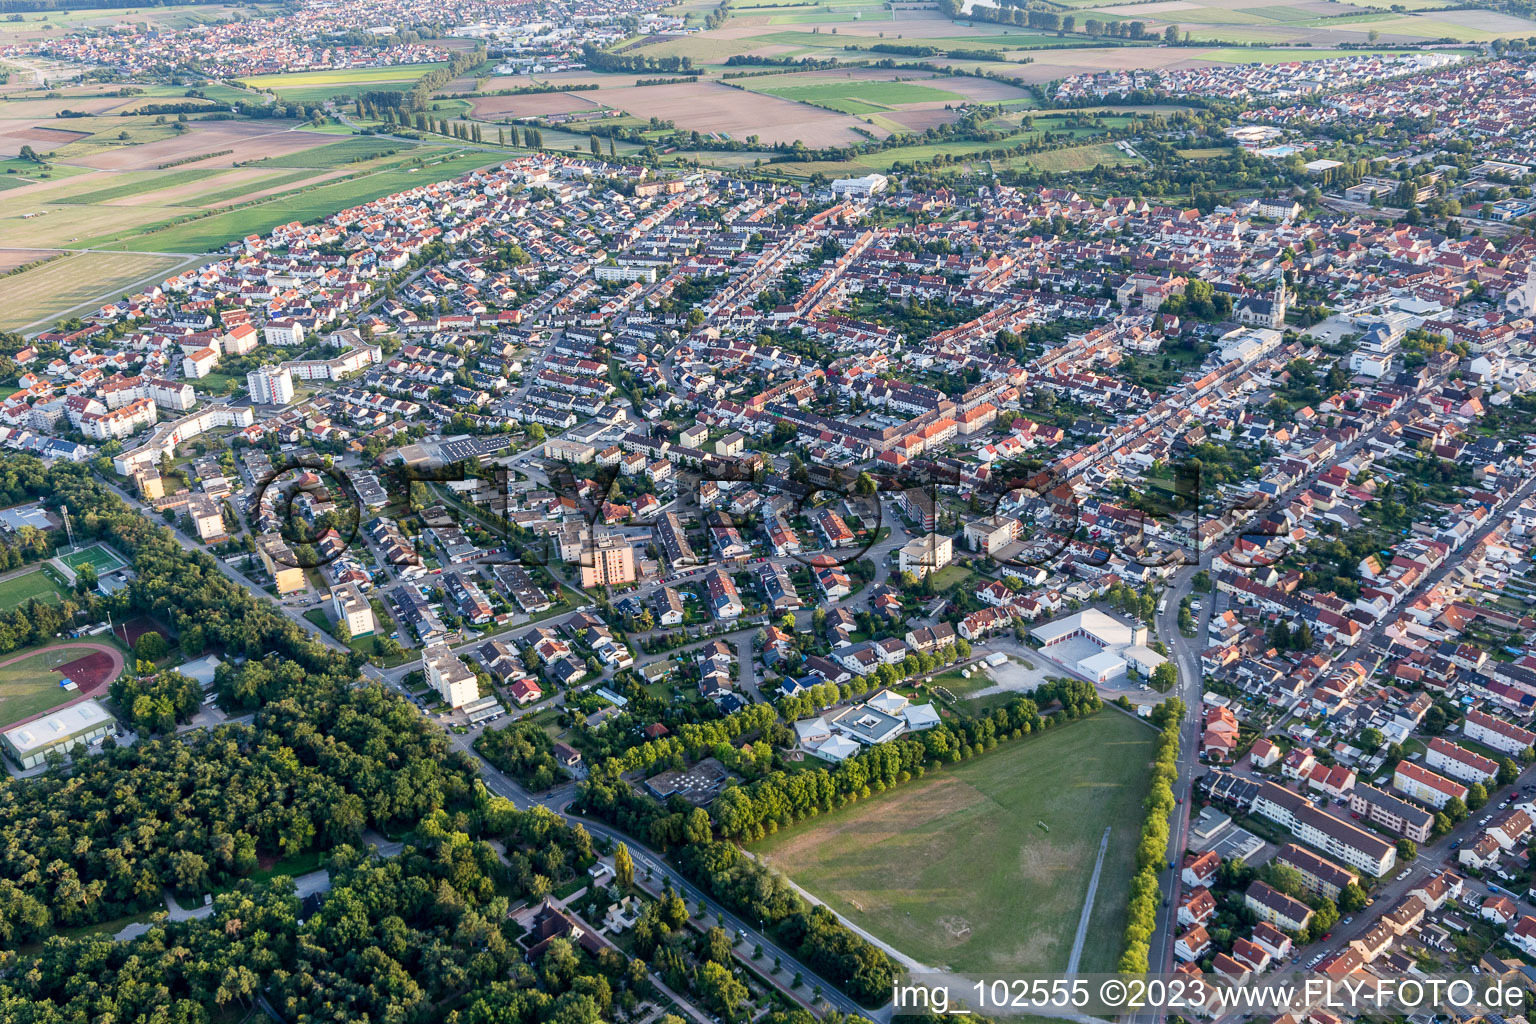 Hockenheim im Bundesland Baden-Württemberg, Deutschland von der Drohne aus gesehen